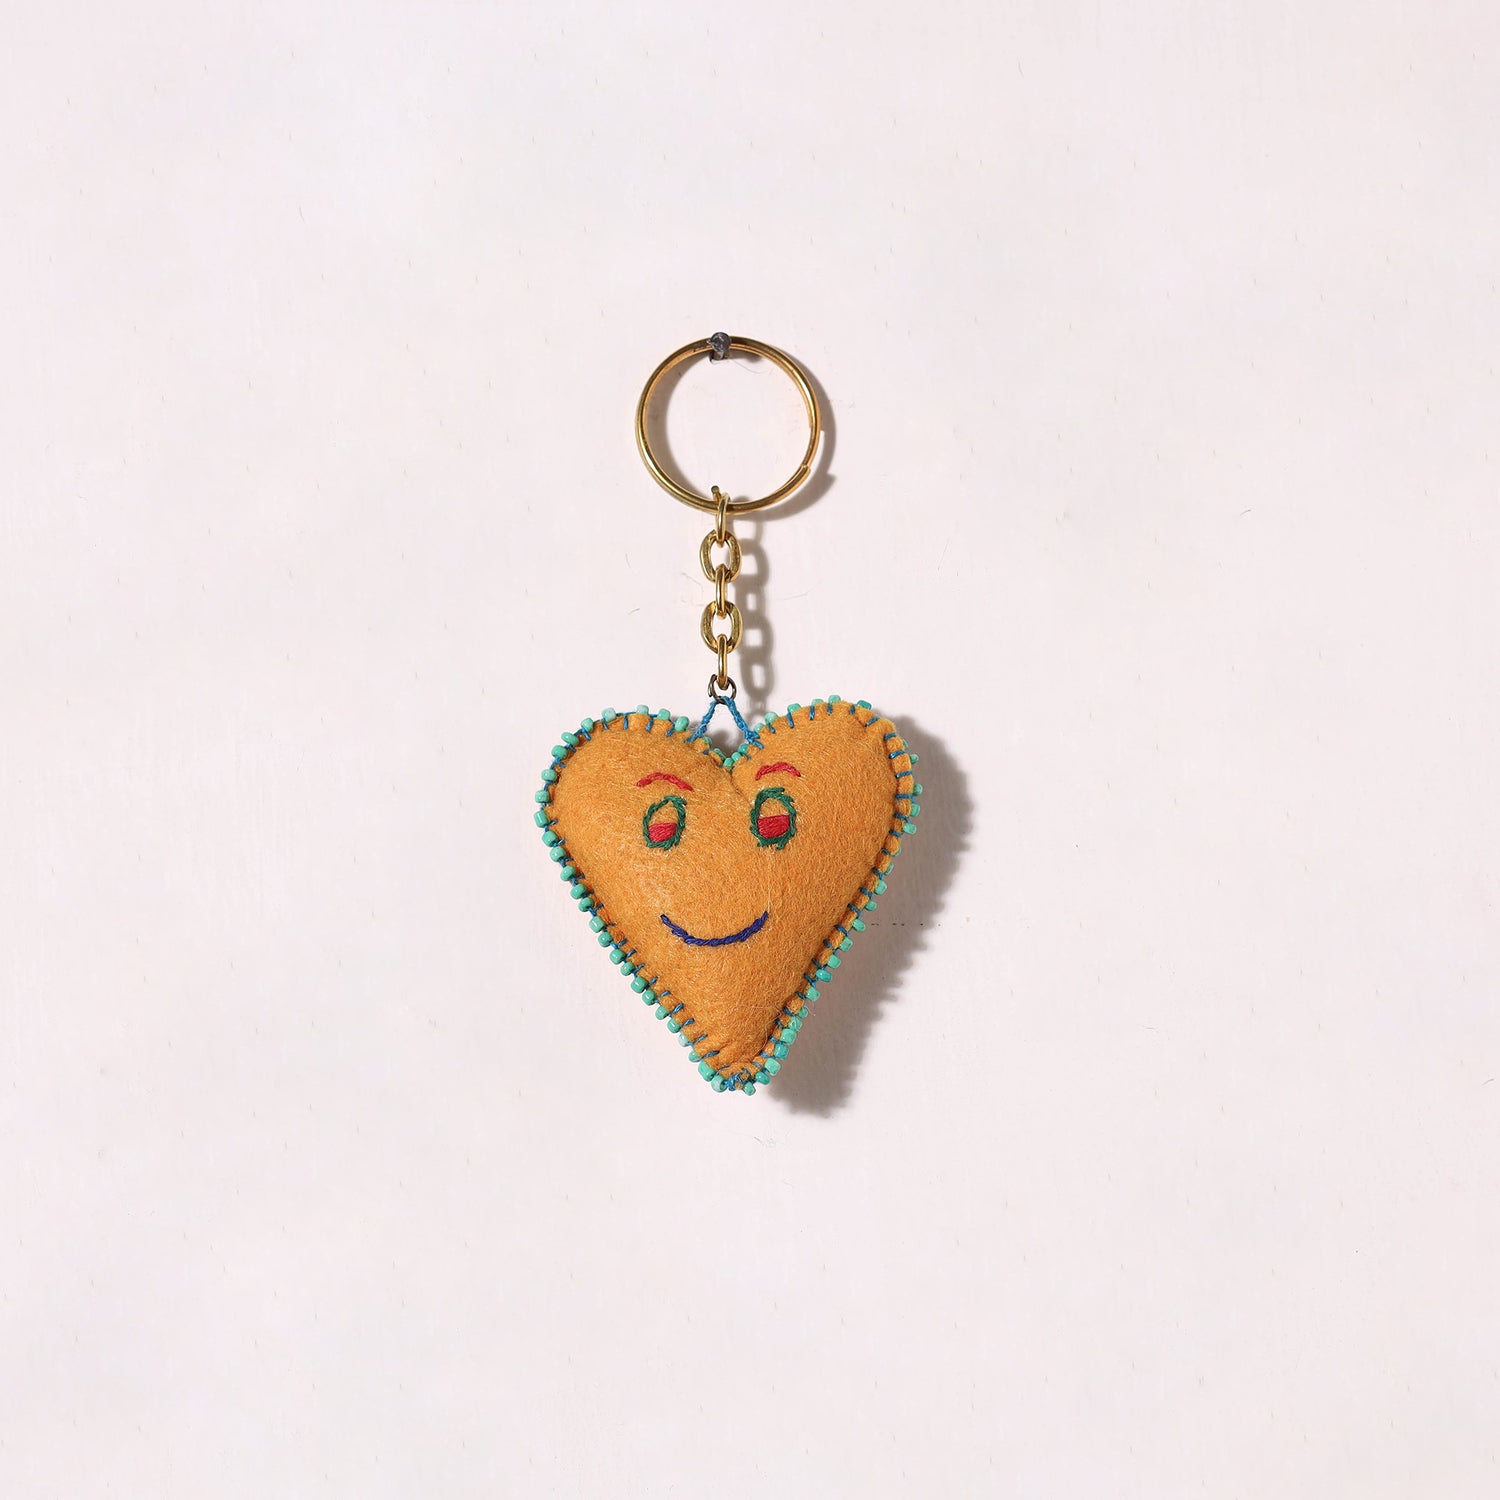 Heart - Handmade Thread & Bead work Felt Keychain